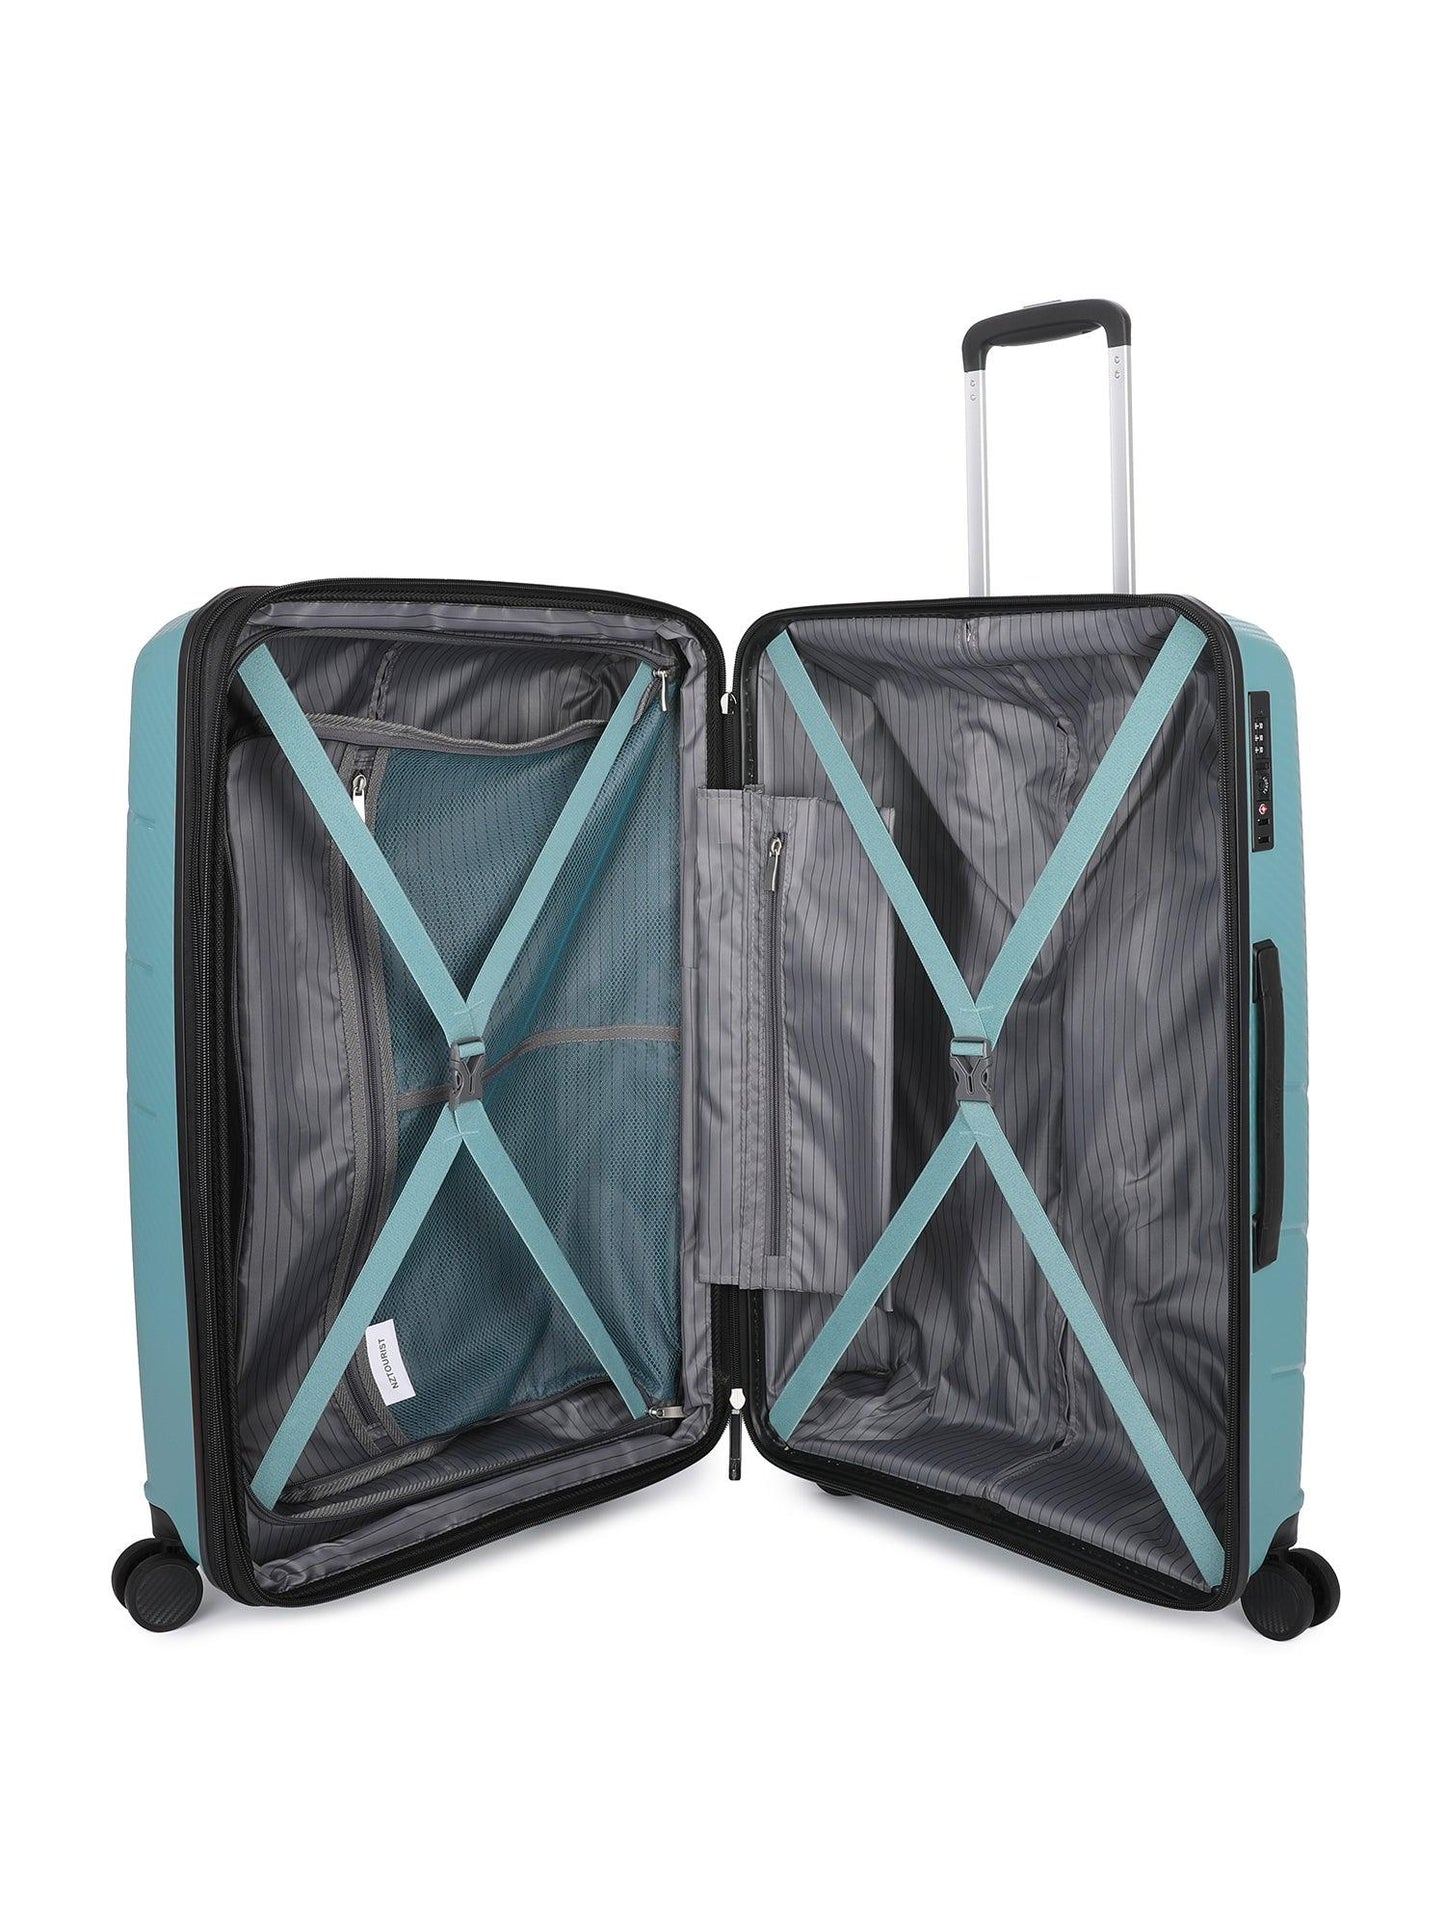 NZTourist Ultra-Light Traveller 69cm Suitcase - Orange - San Michelle Bags suitcase nz